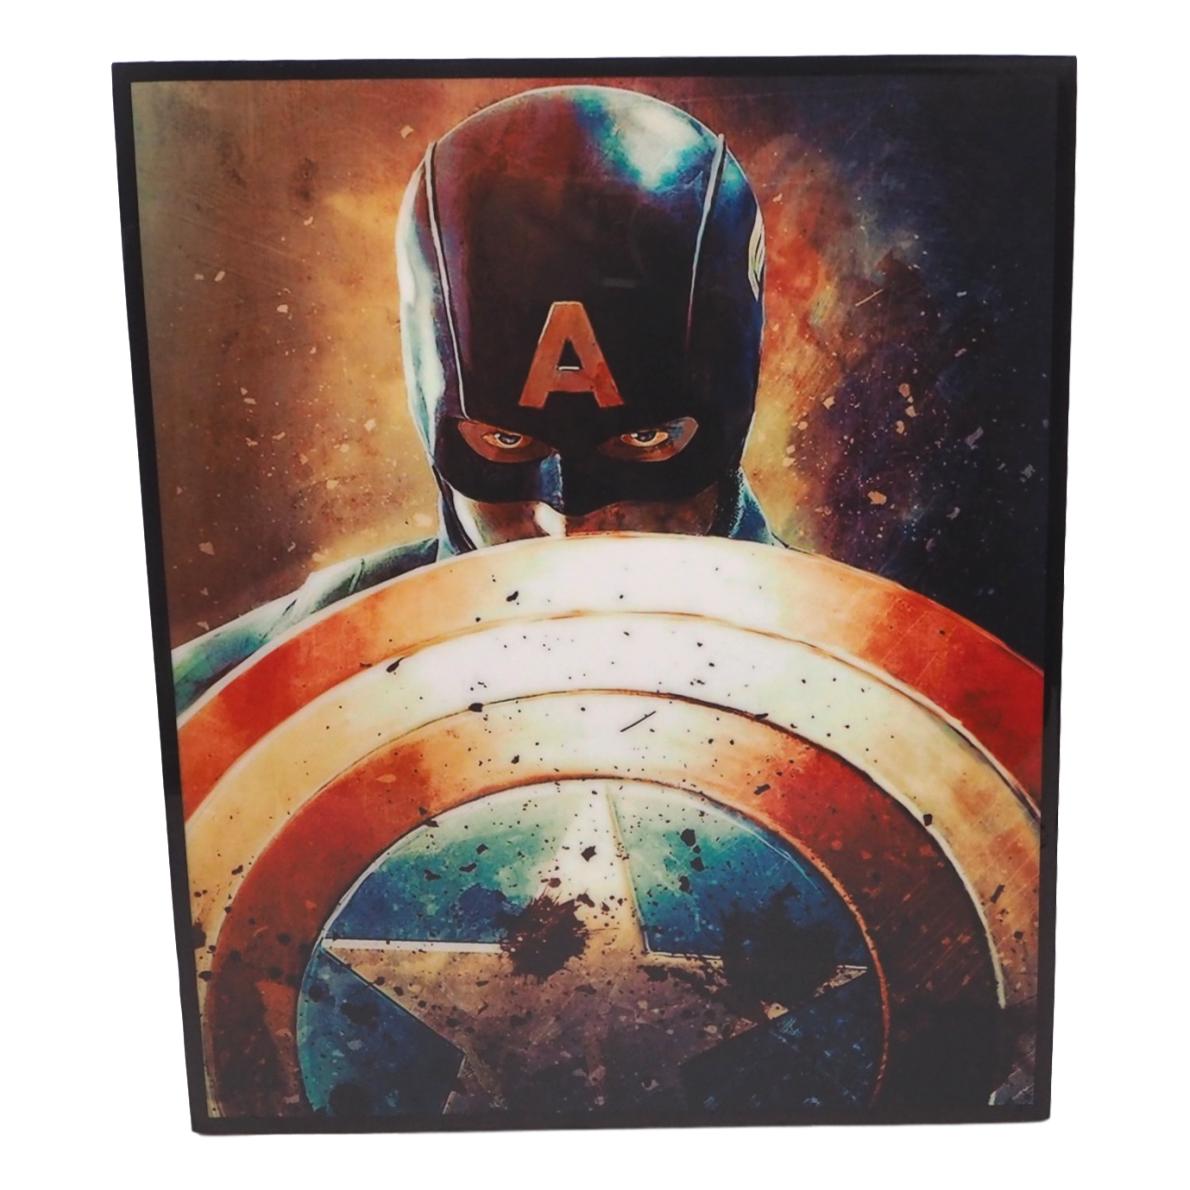 楽天市場 送料無料 キャプテン アメリカ Captain America アイアンマン Iron Man アートパネル 壁掛け 据え置き フック付き アーティスト Popパネル インテリア アートフレーム ポスター クール 面白い かっこいい アート 雑貨 カフェ リビング 額縁 オシャレ